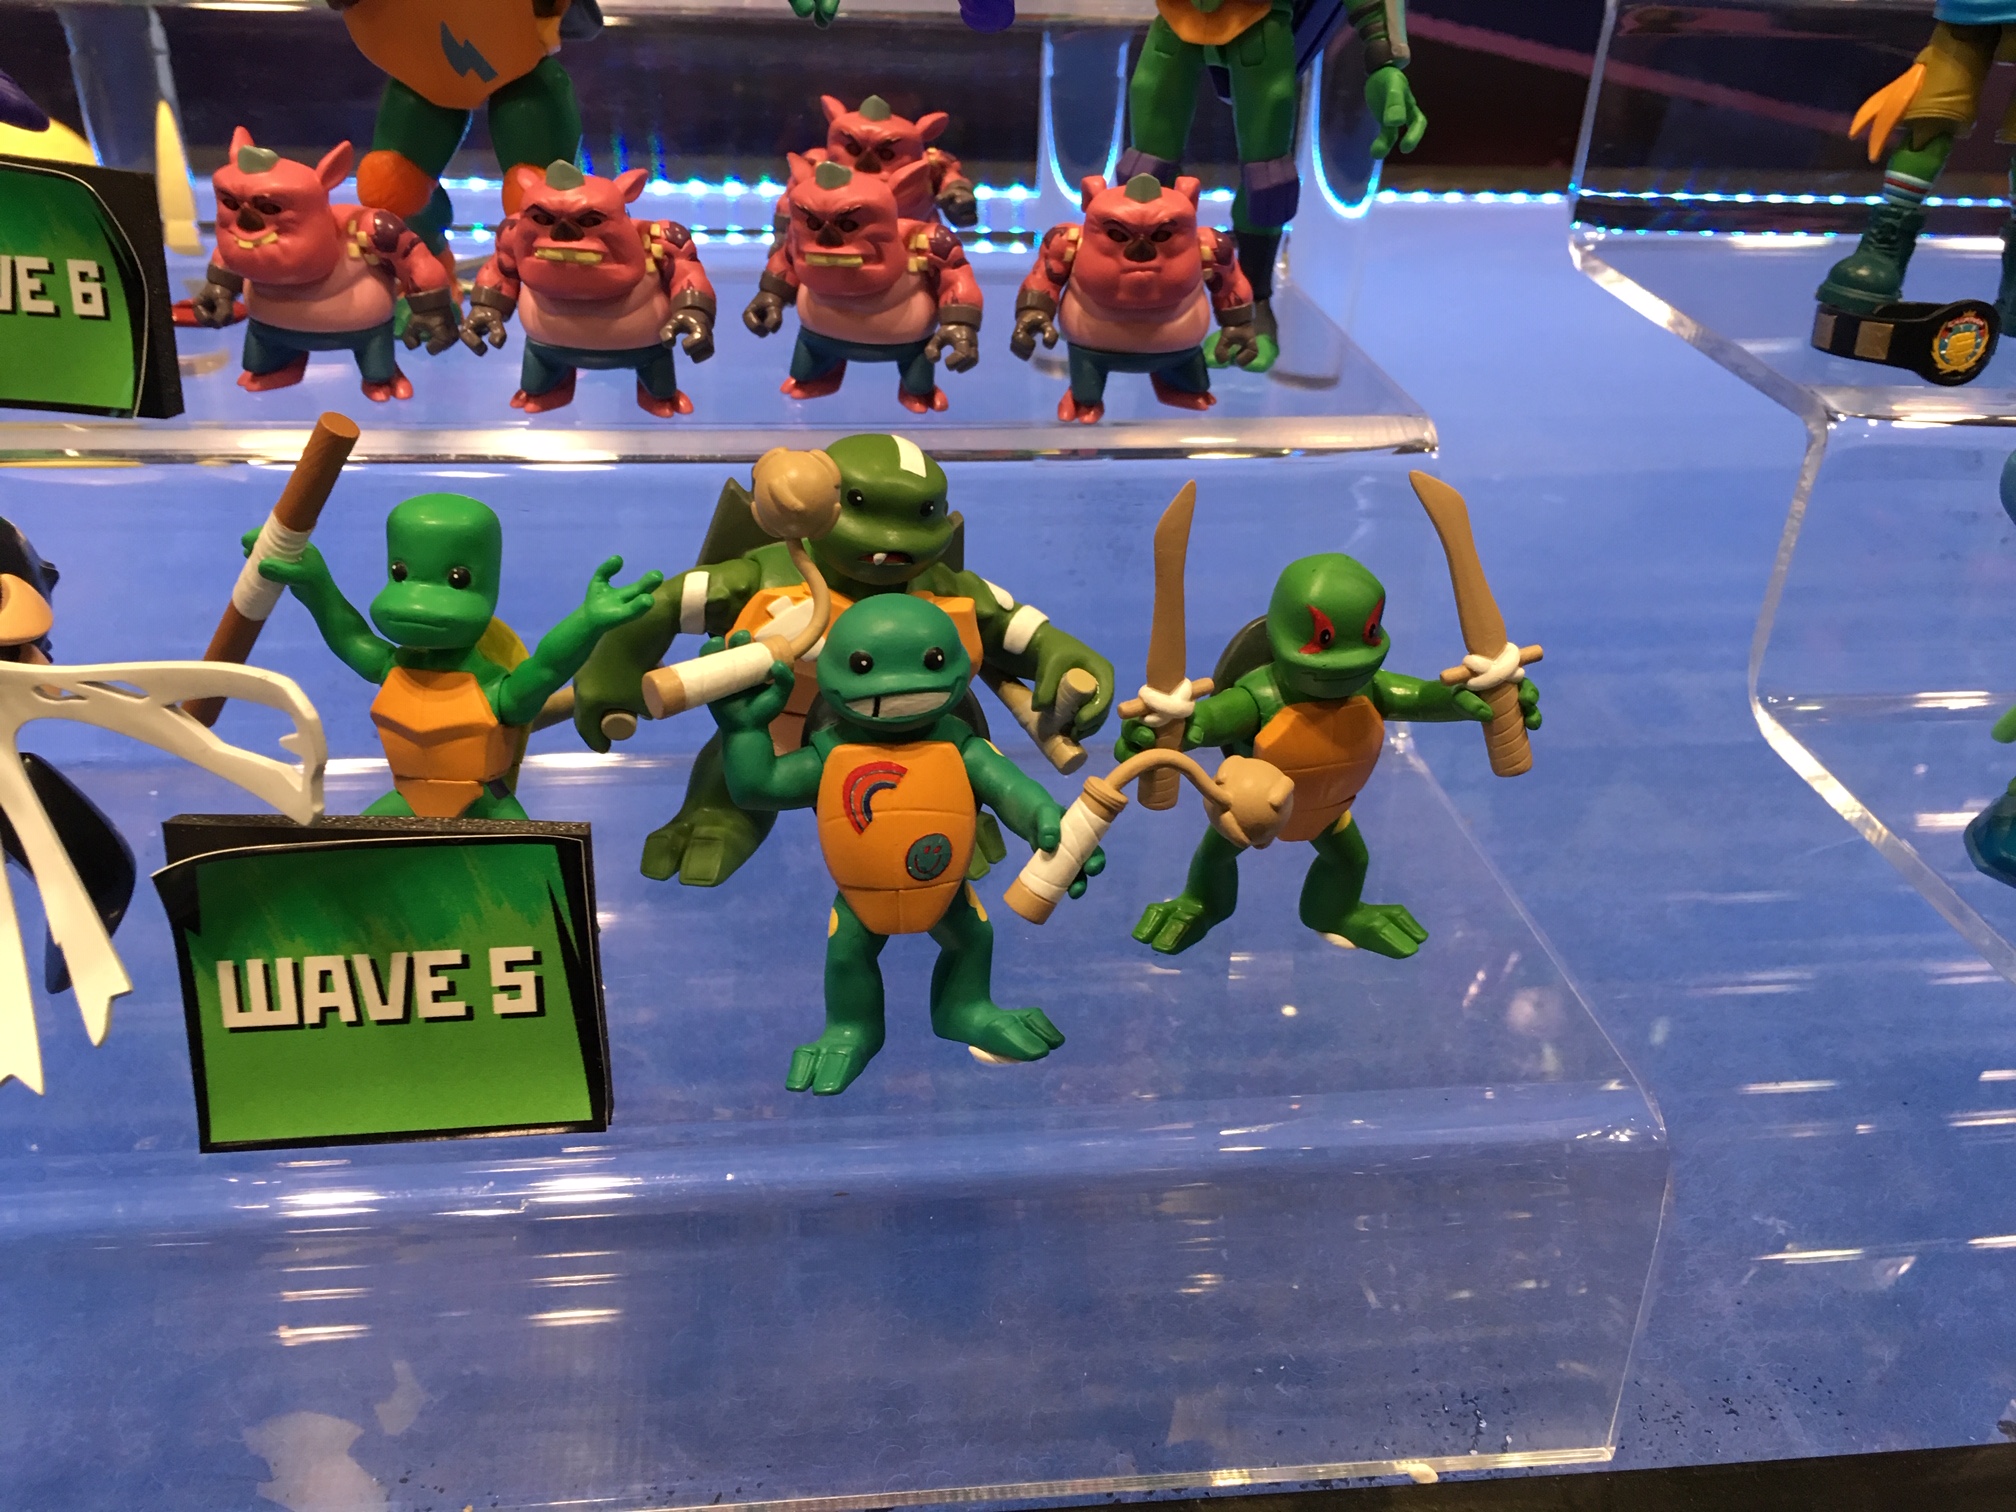 original ninja turtles action figures